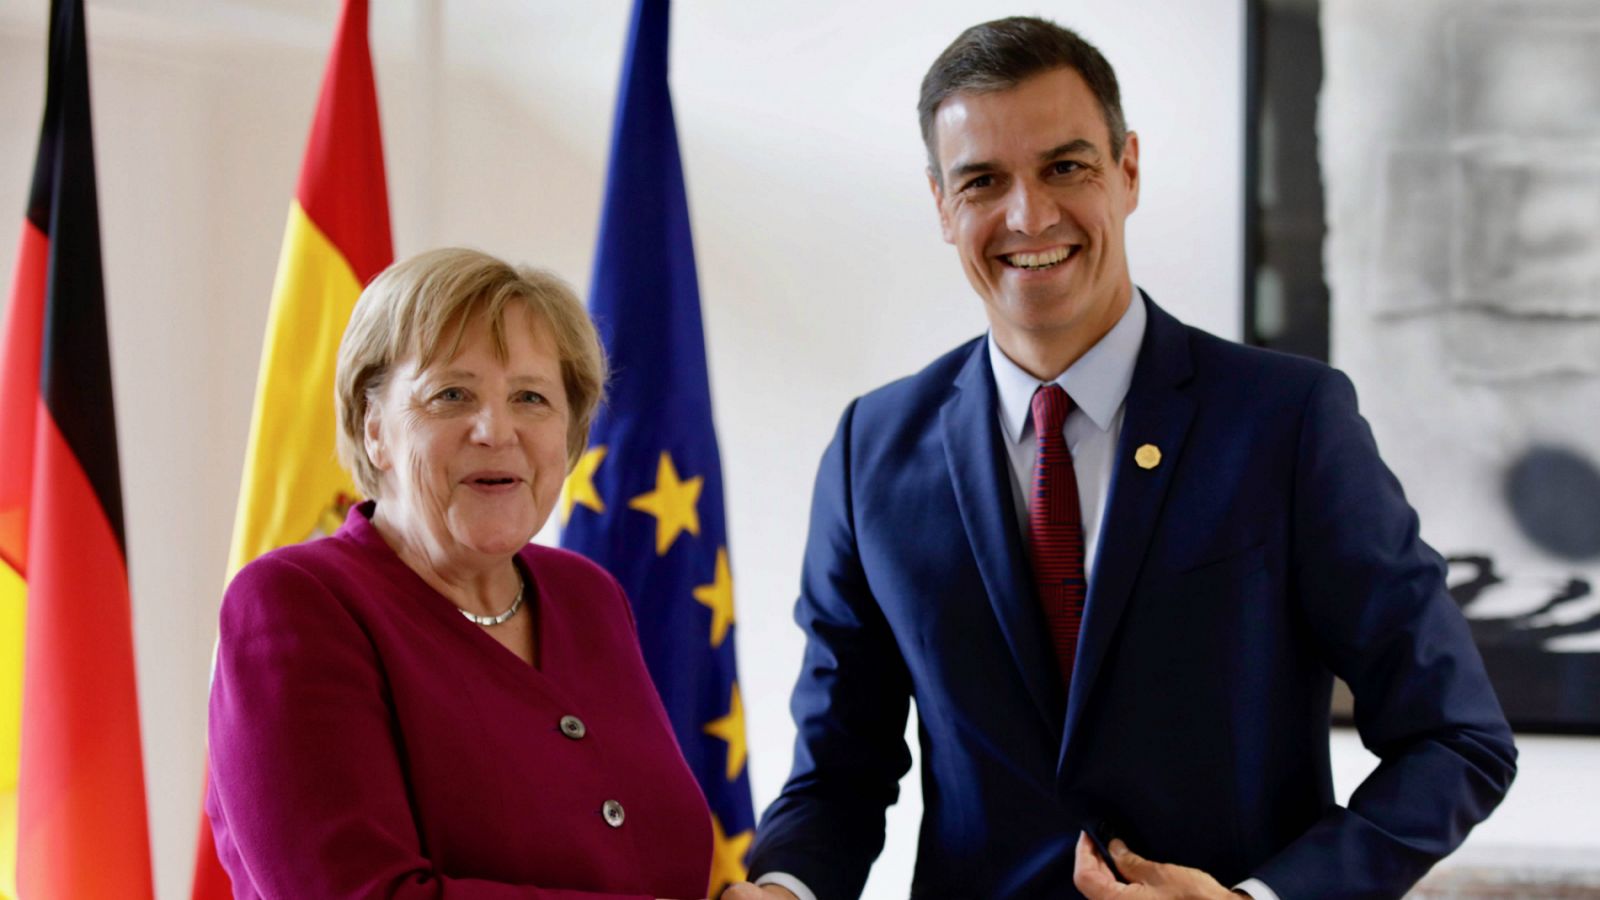 Elecciones europeas | Los líderes europeos inician las negociaciones para renovar los cargos de la UE - RTVE.es